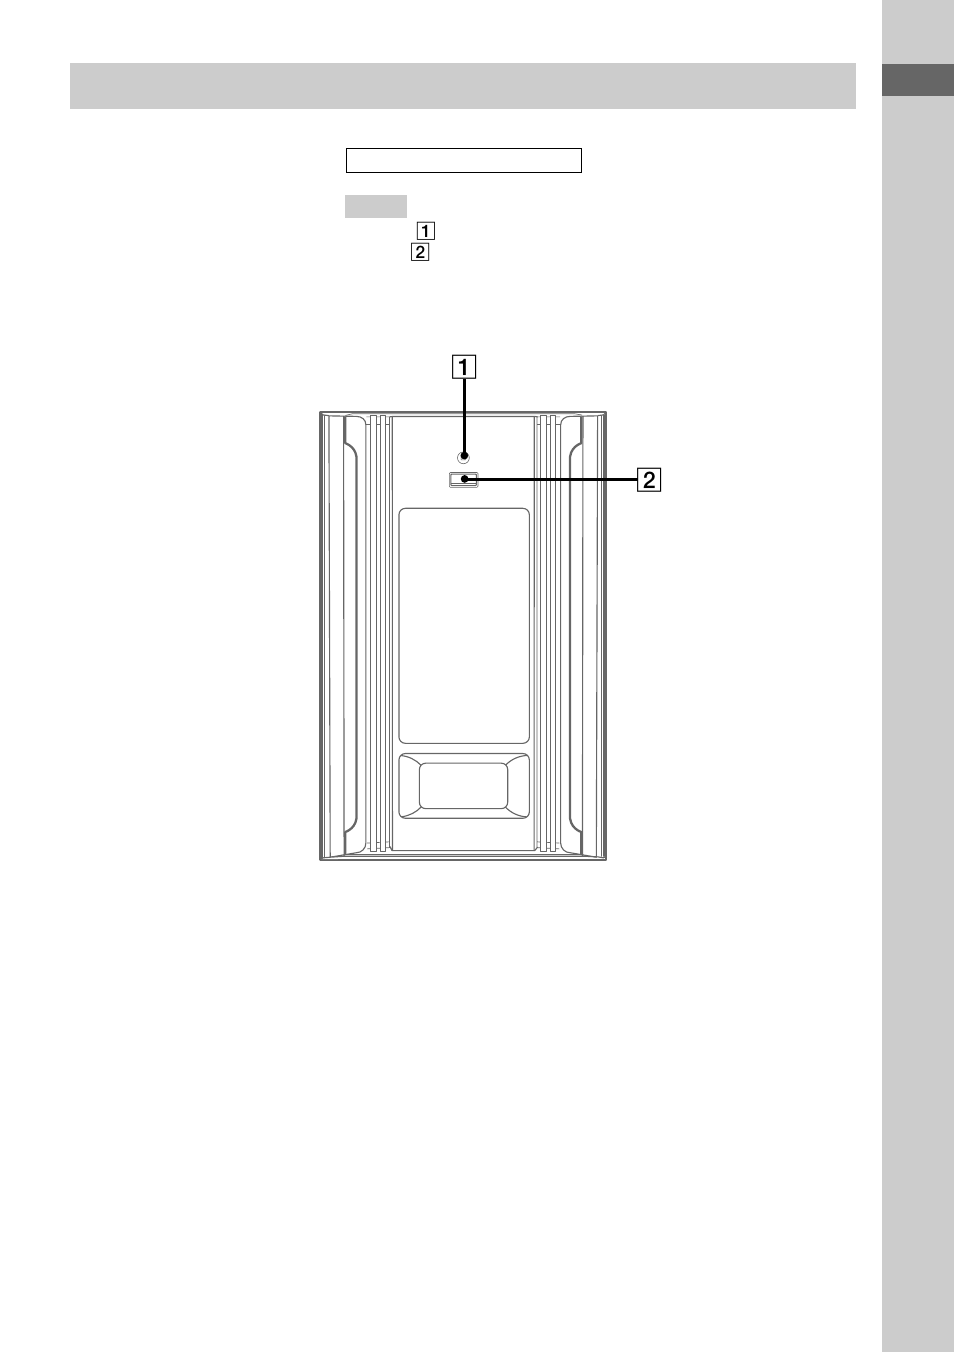 Altavoz de subgraves | Sony MHC-GX20 Manual del usuario | Página 5 / 32